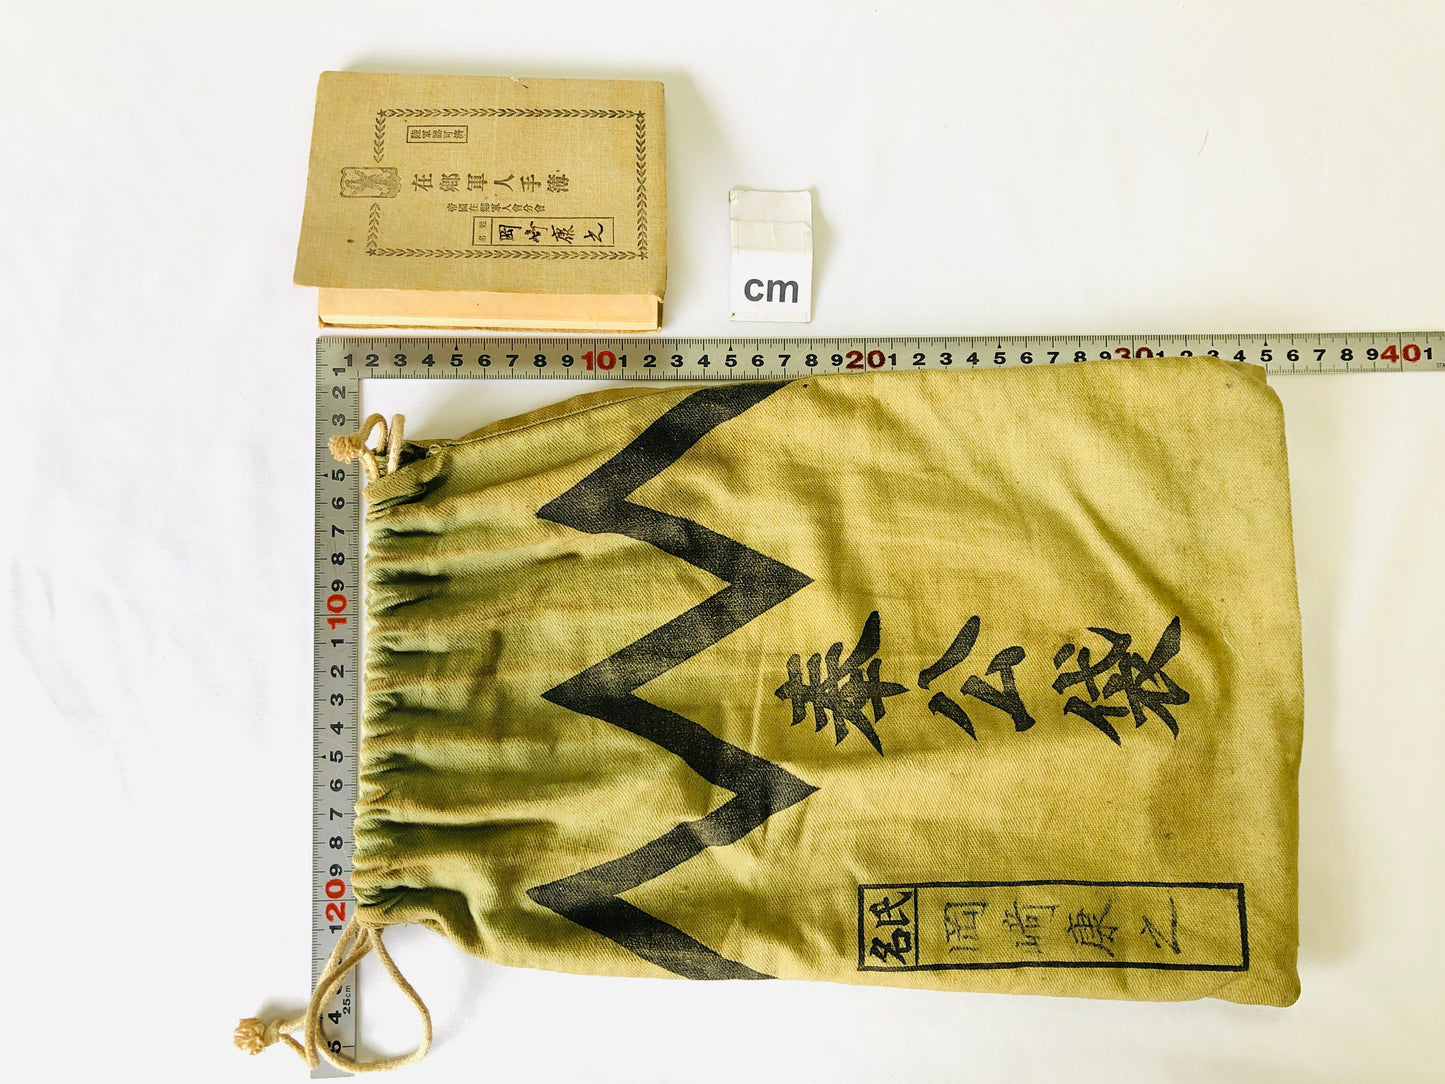 Y4919 Imperial Japan Army Houkoubukuro bag notebook Japanese WW2 vintage